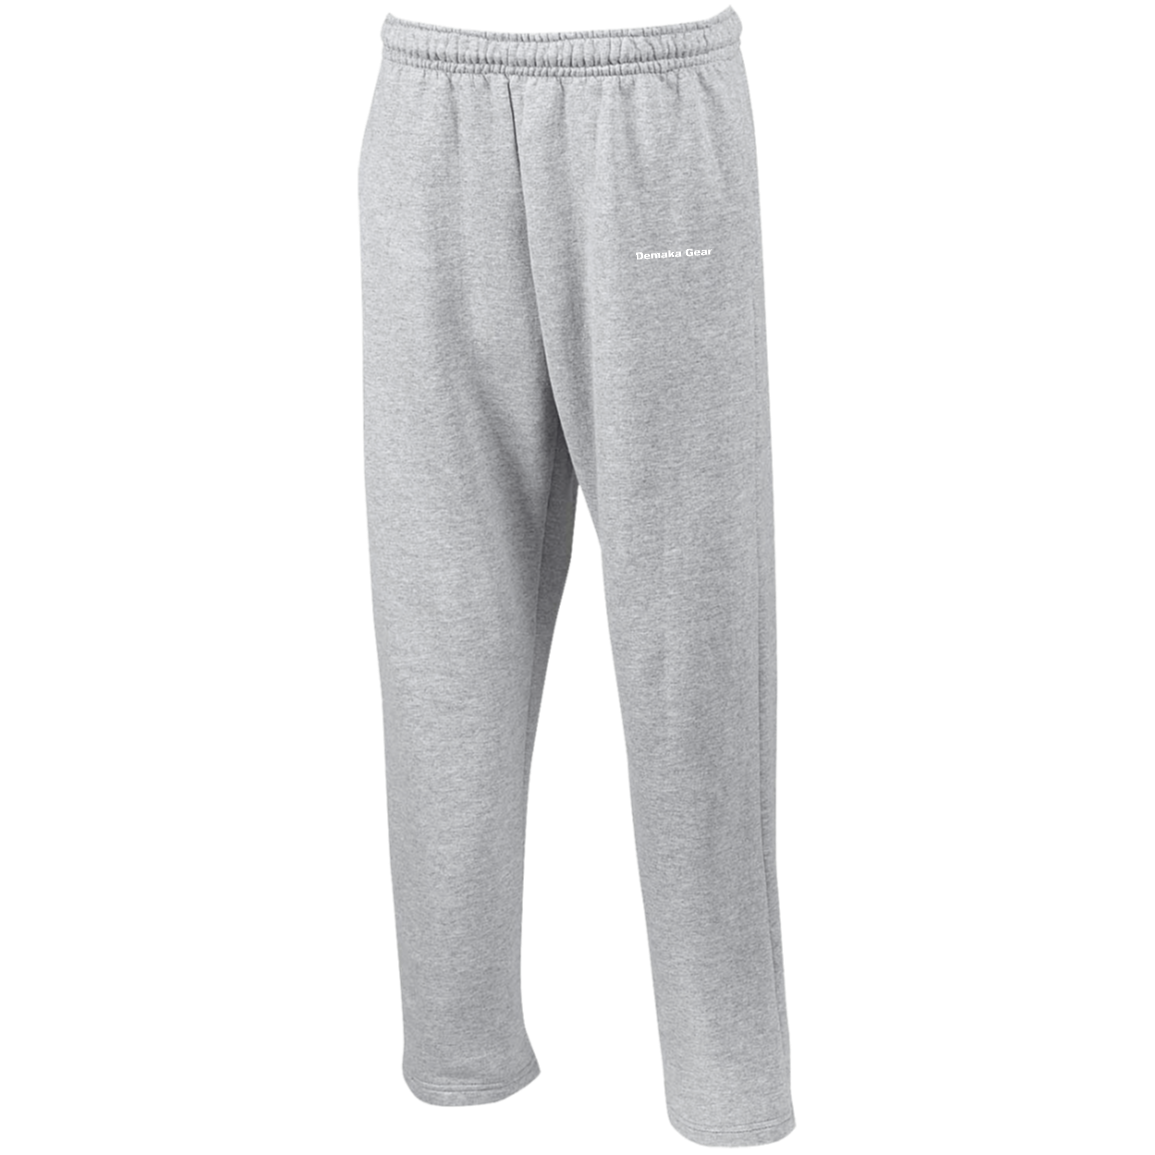 Demaka Gear Open Bottom Sweatpants with Pockets